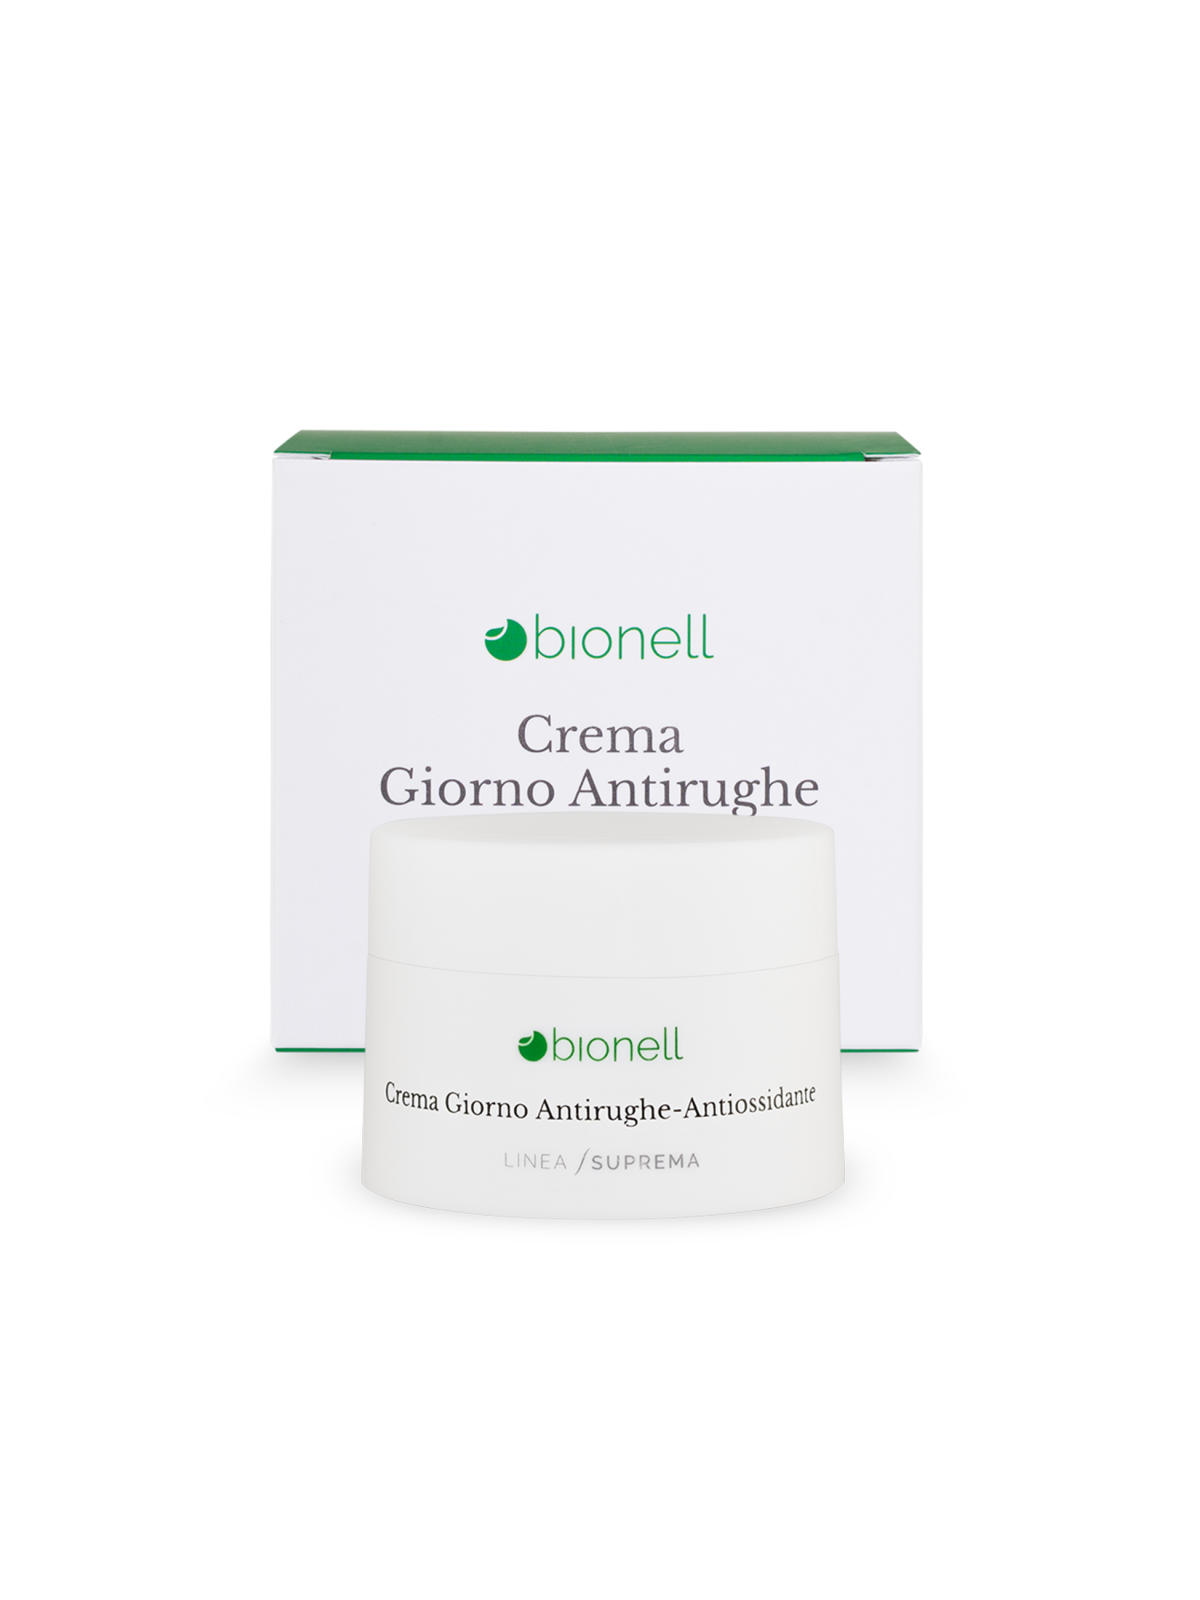 Bionell Crema giorno antirughe antiossidante 50 ml11,00 €